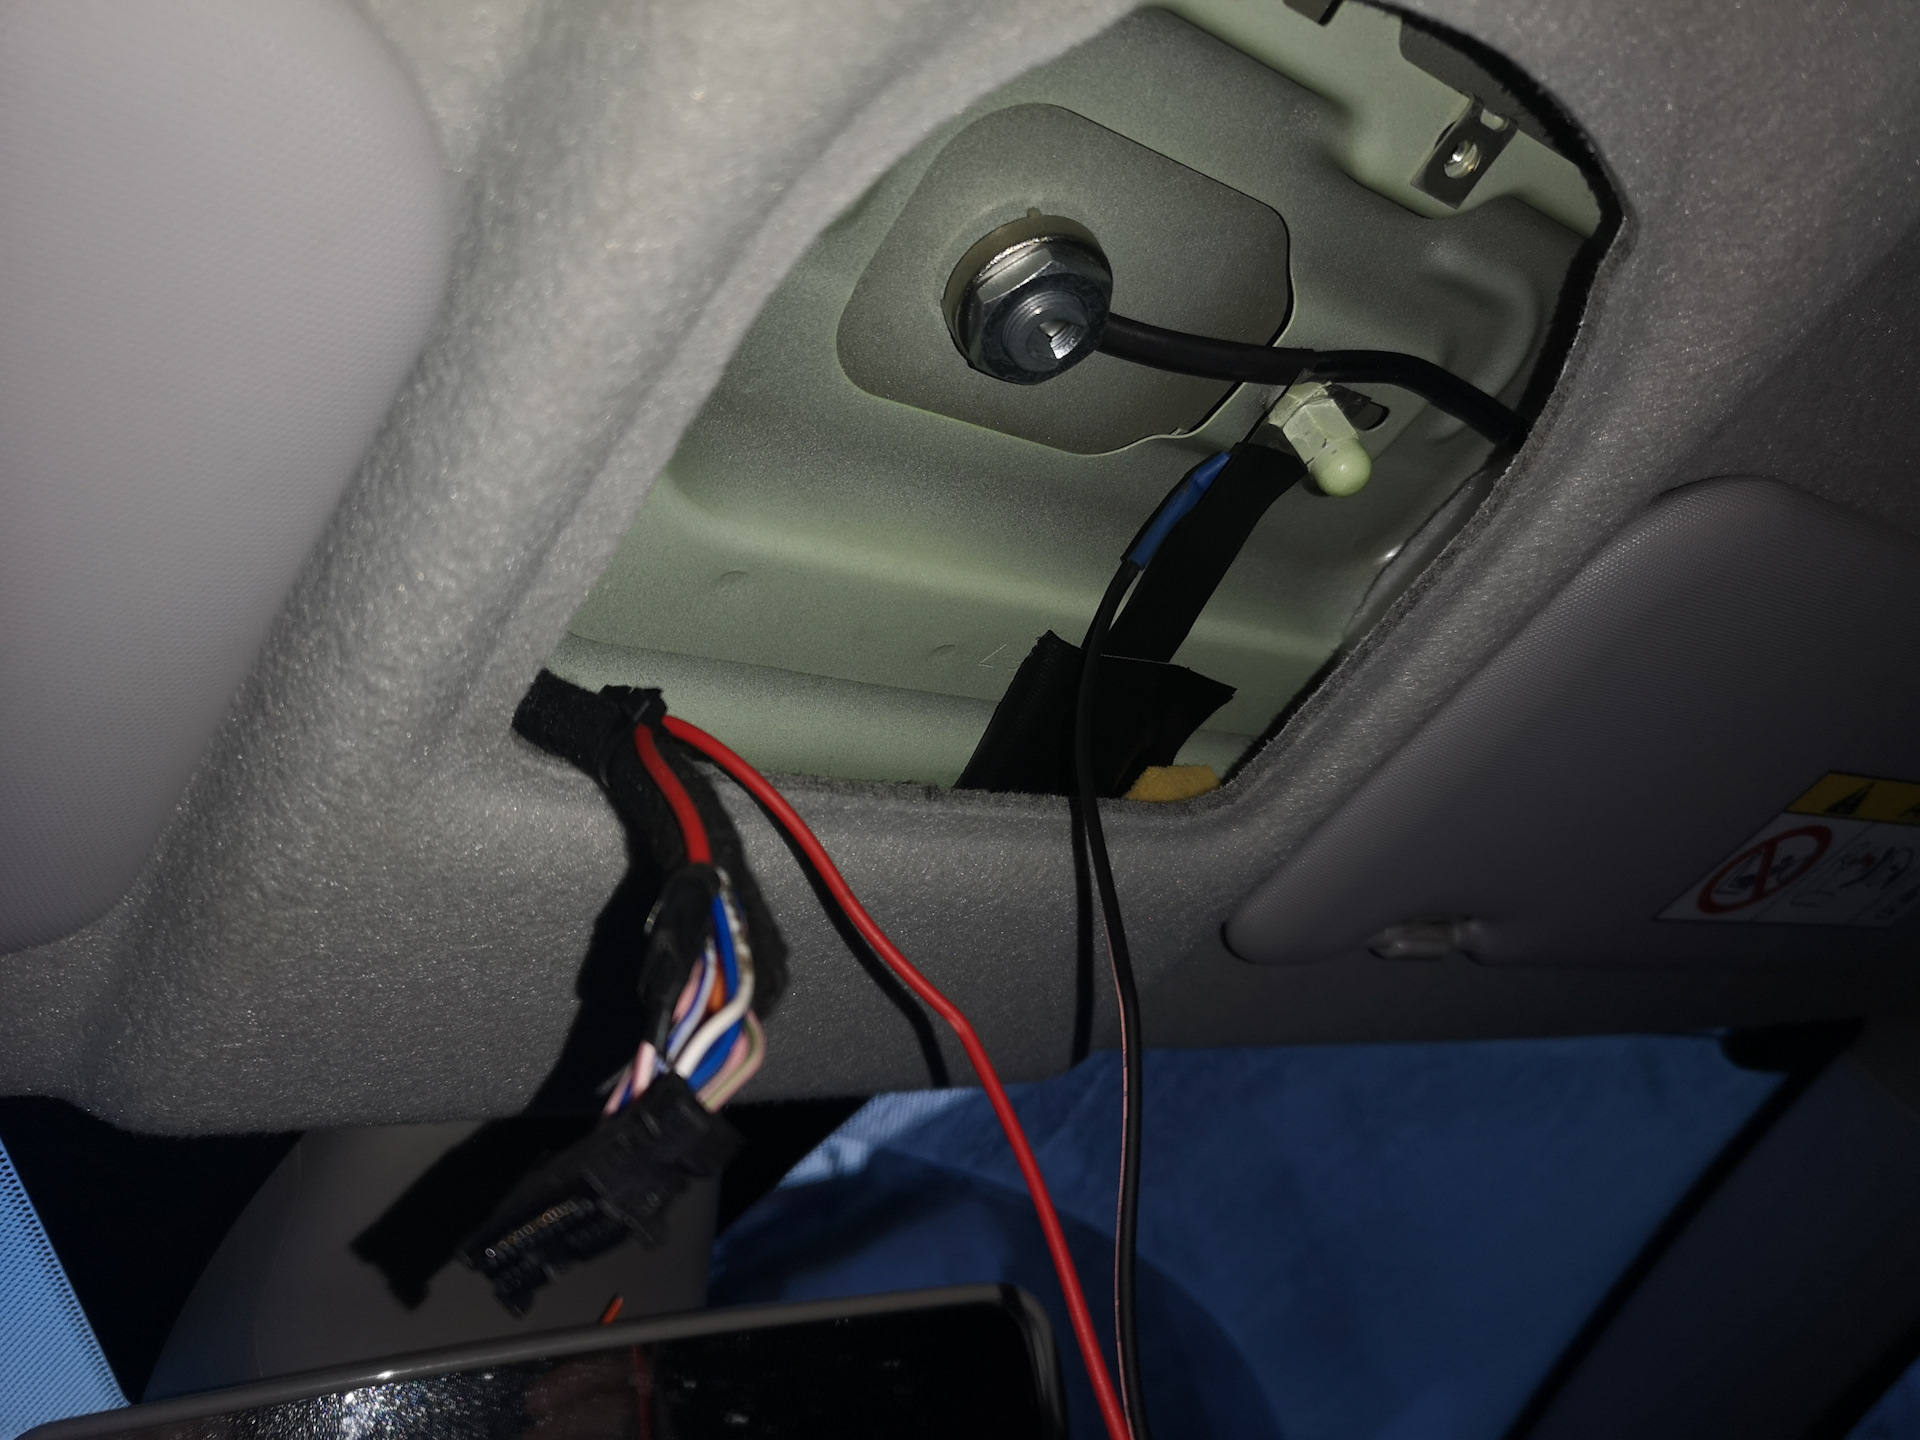 Регистратор без прикуривателя. GPS антенна VW Amarok. Подключить видеорегистратор без прикуривателя. Подключить видеорегистратор в автомобиле без прикуривателя.